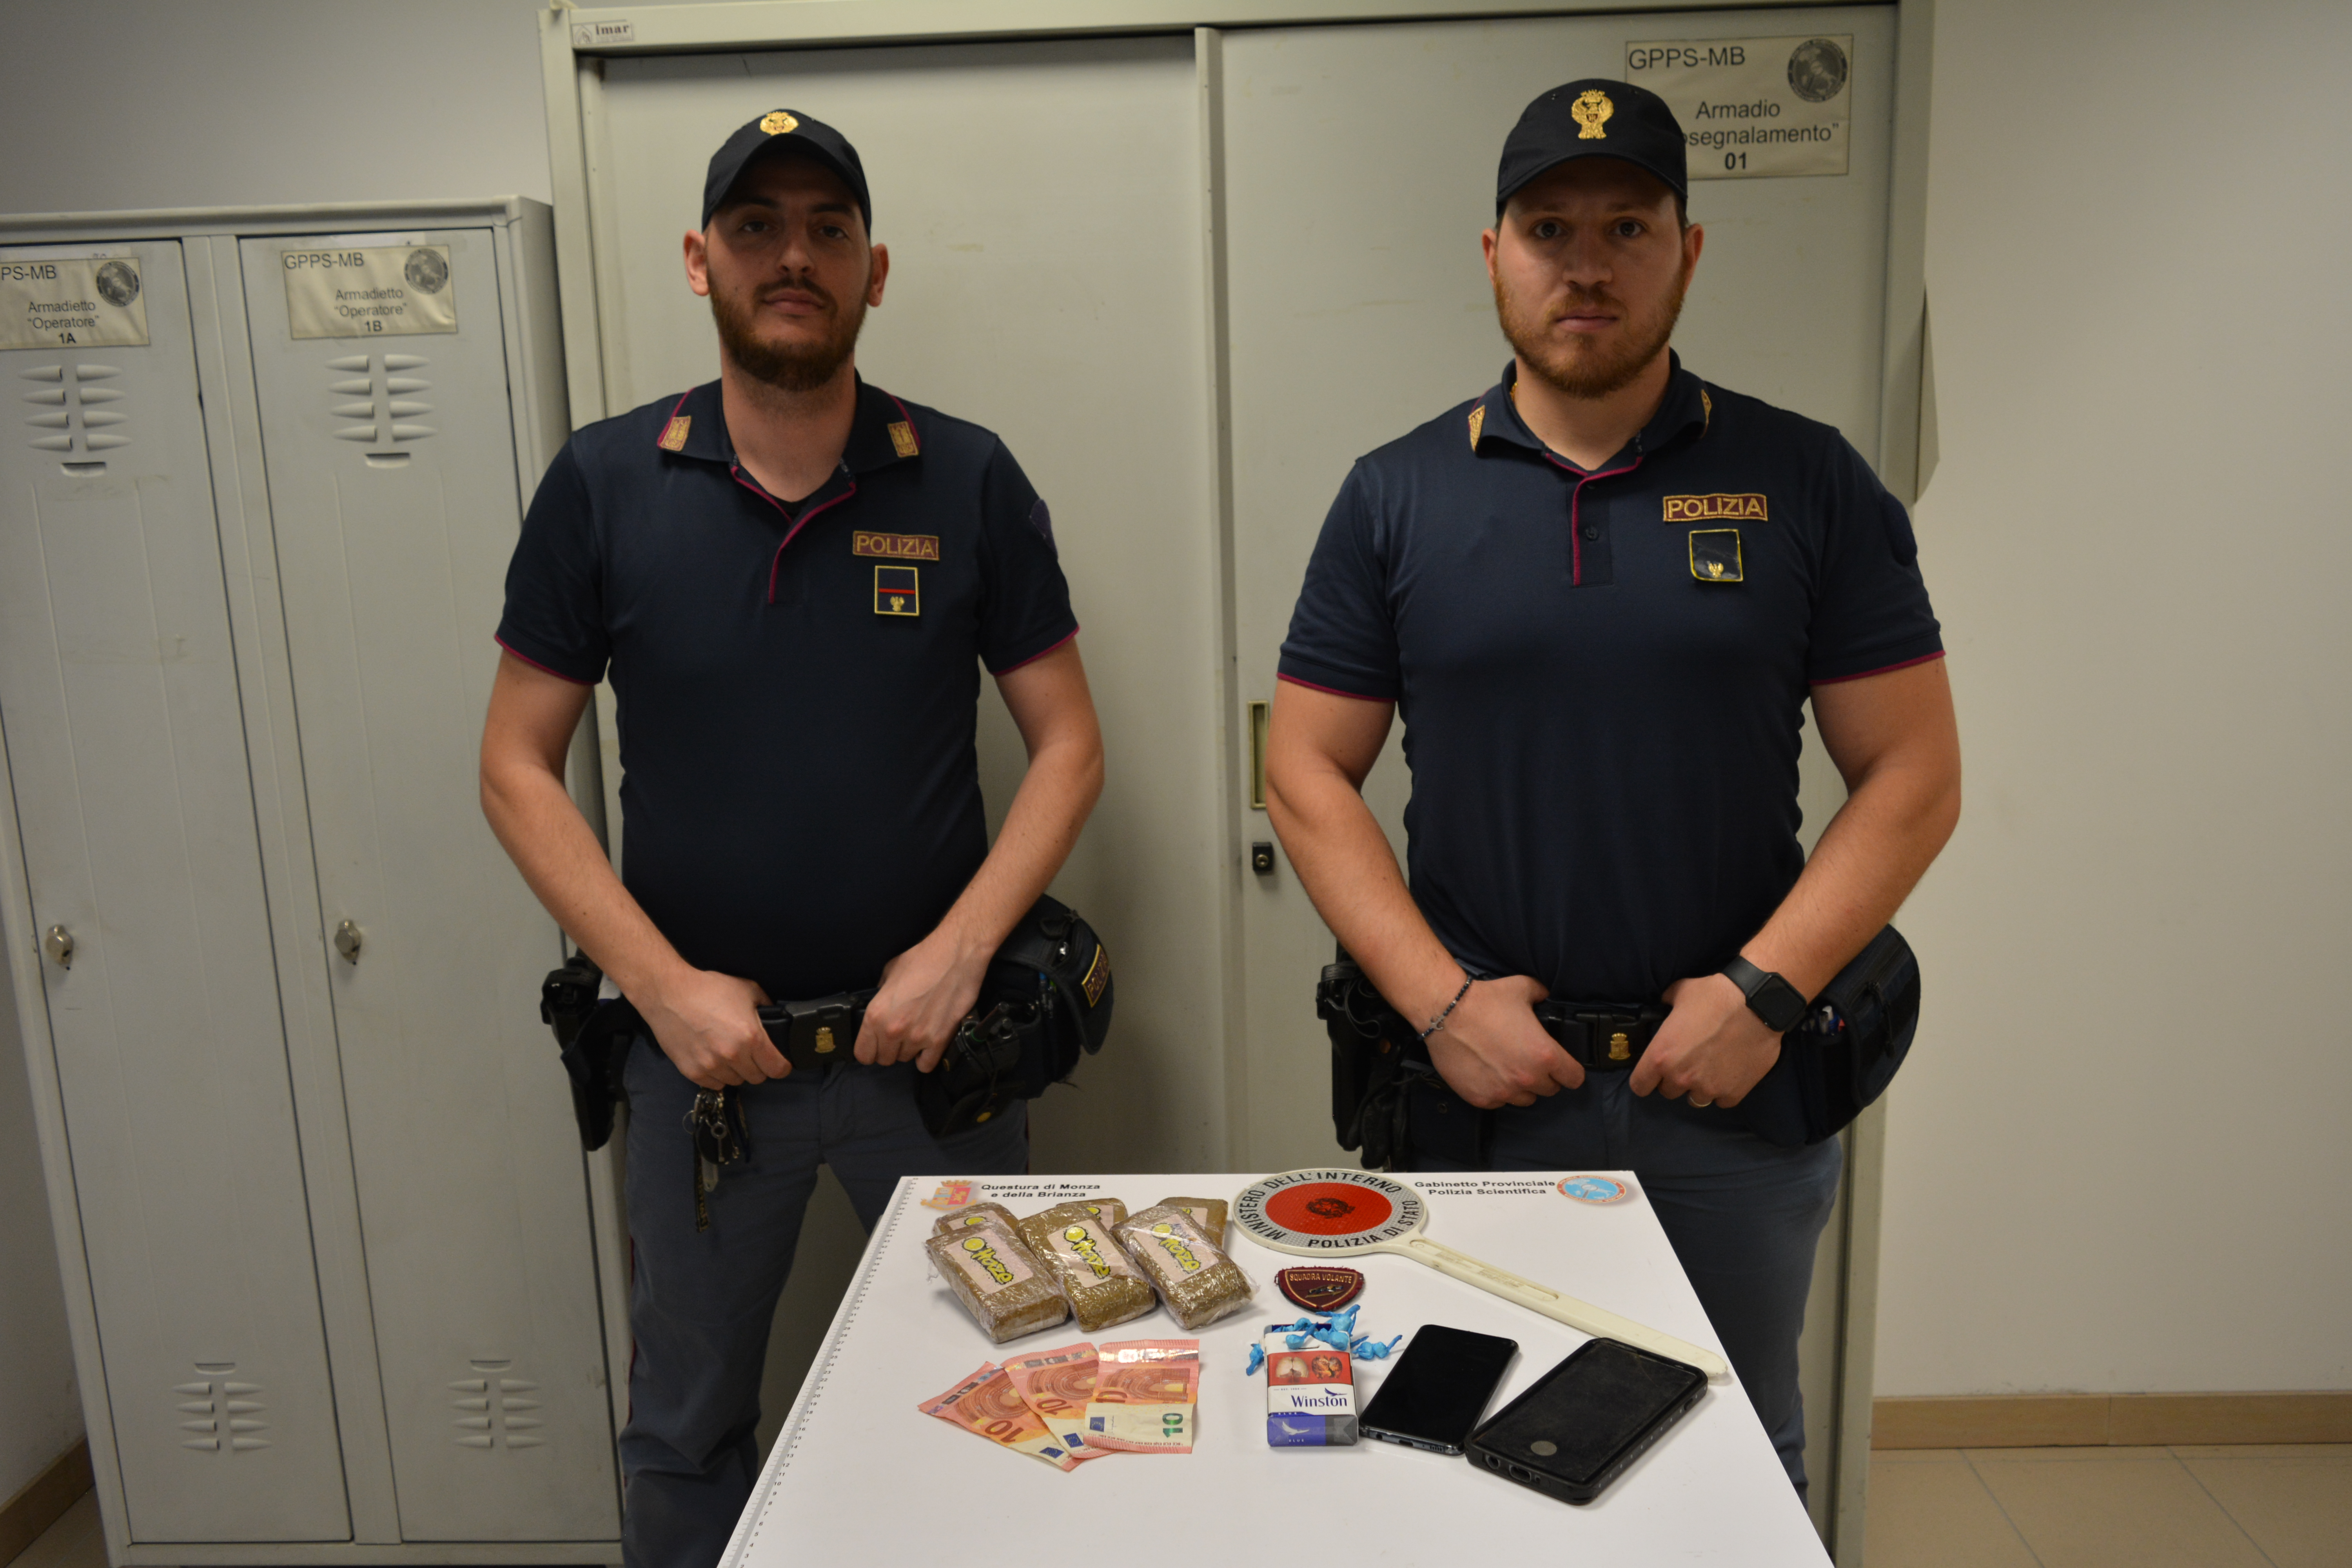 Monza e Brianza: la Polizia di Stato arresta in città due giovani in possesso di 6 panetti di hashish e 26 dosi di cocaina destinati allo spaccio.